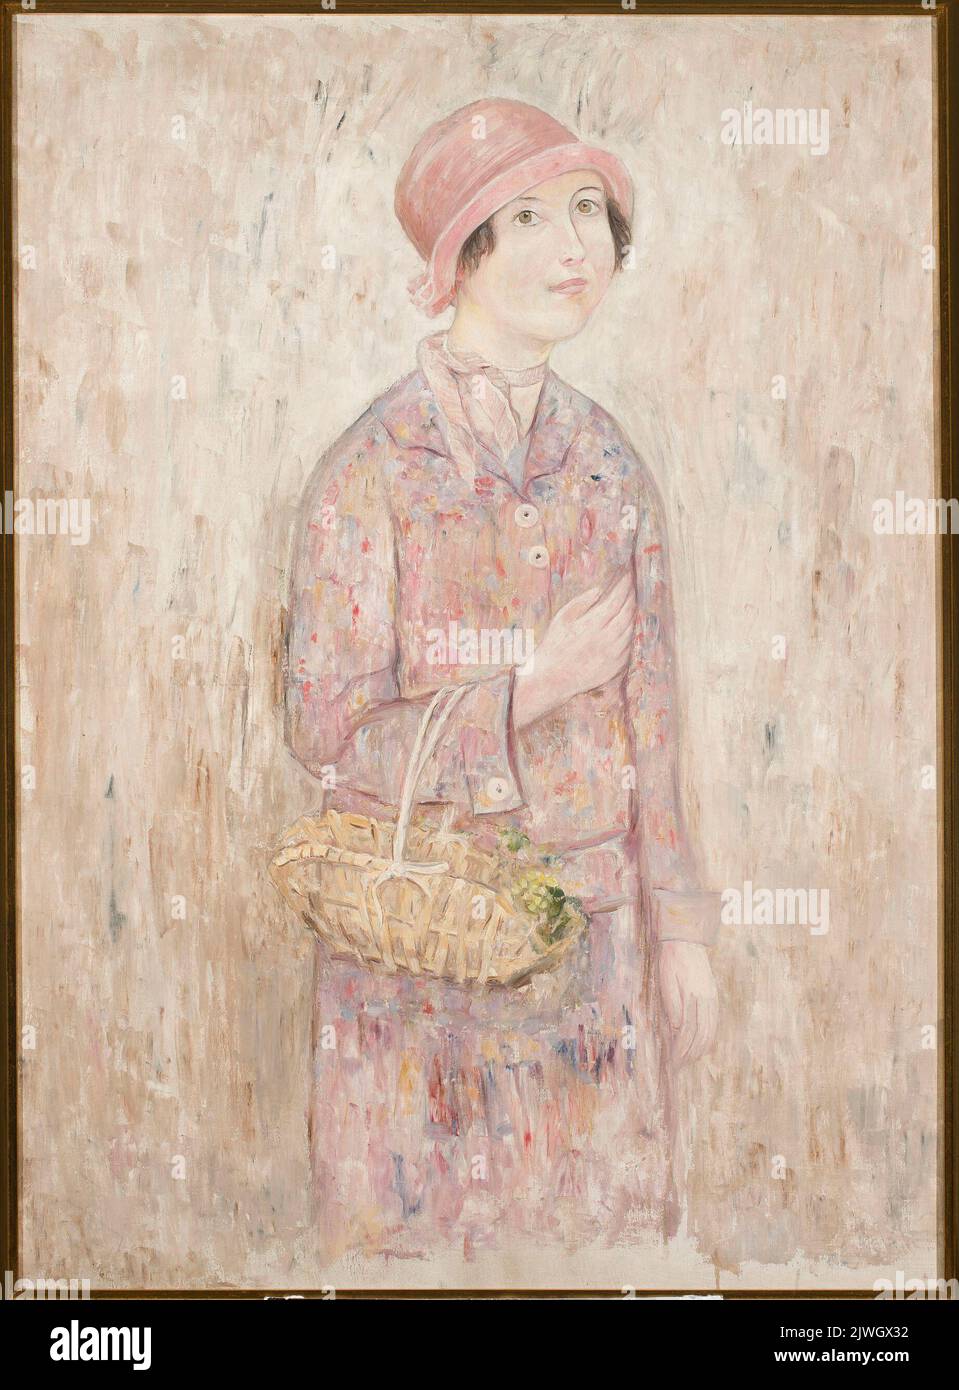 Dziewczyna w różowym kapeluszu. Makowski, Tadeusz (1882-1932), painter Stock Photo